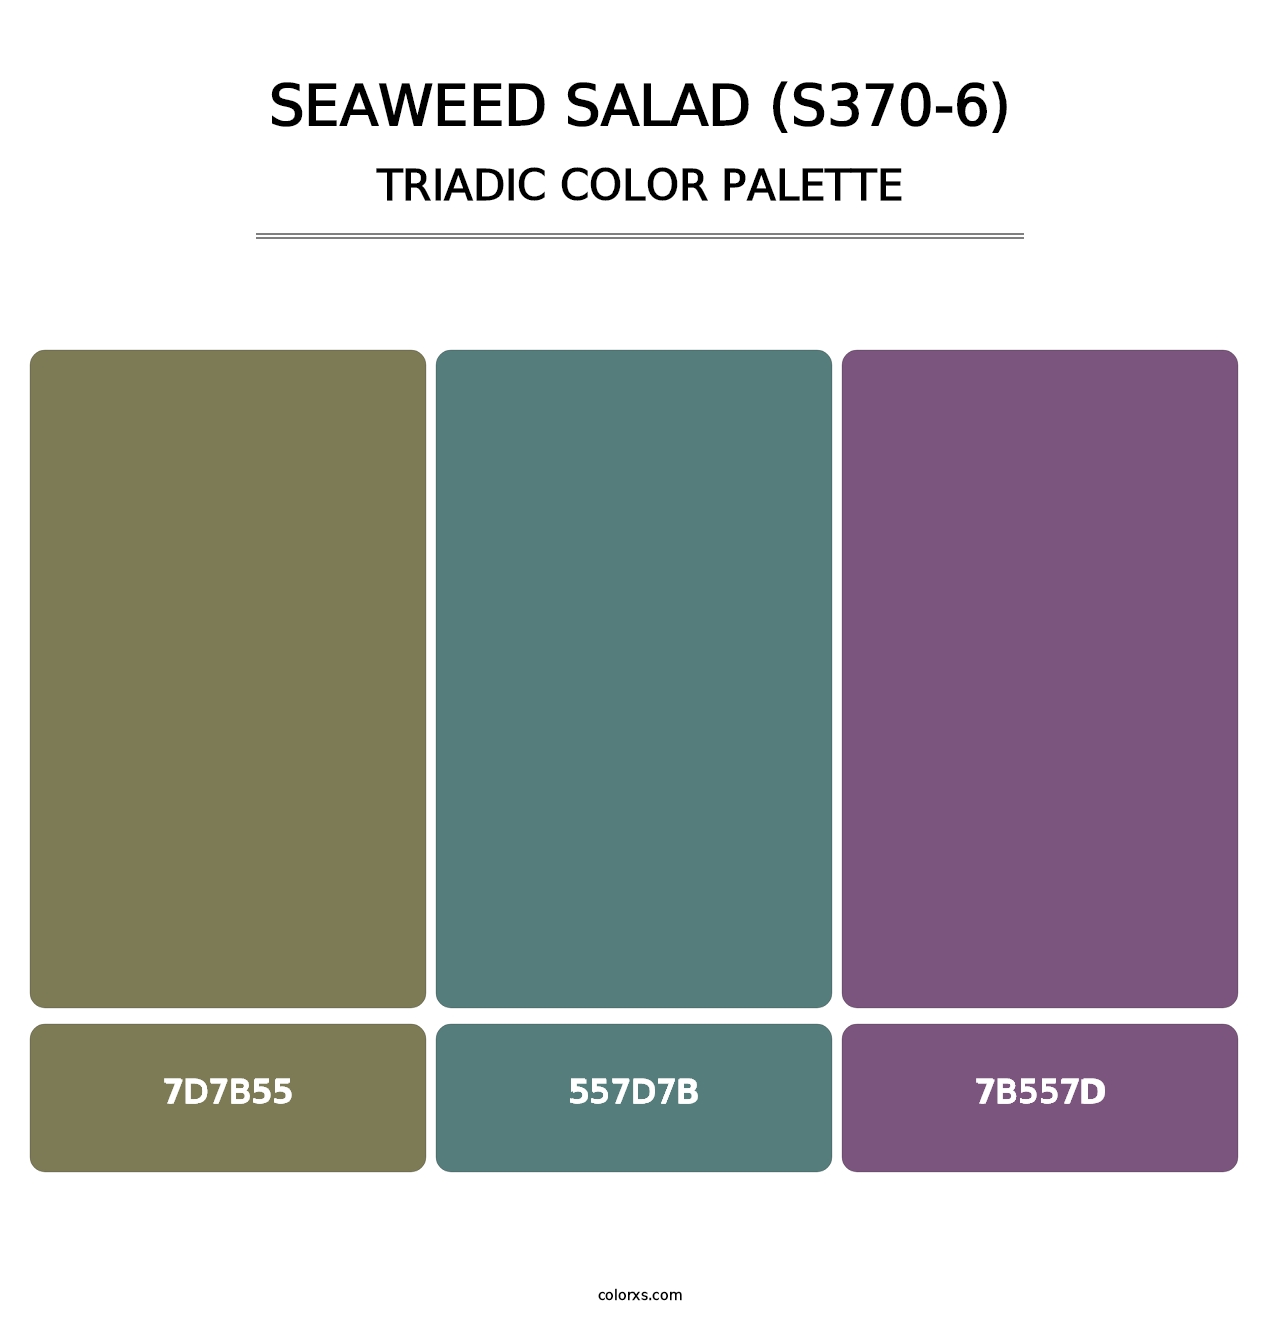 Seaweed Salad (S370-6) - Triadic Color Palette